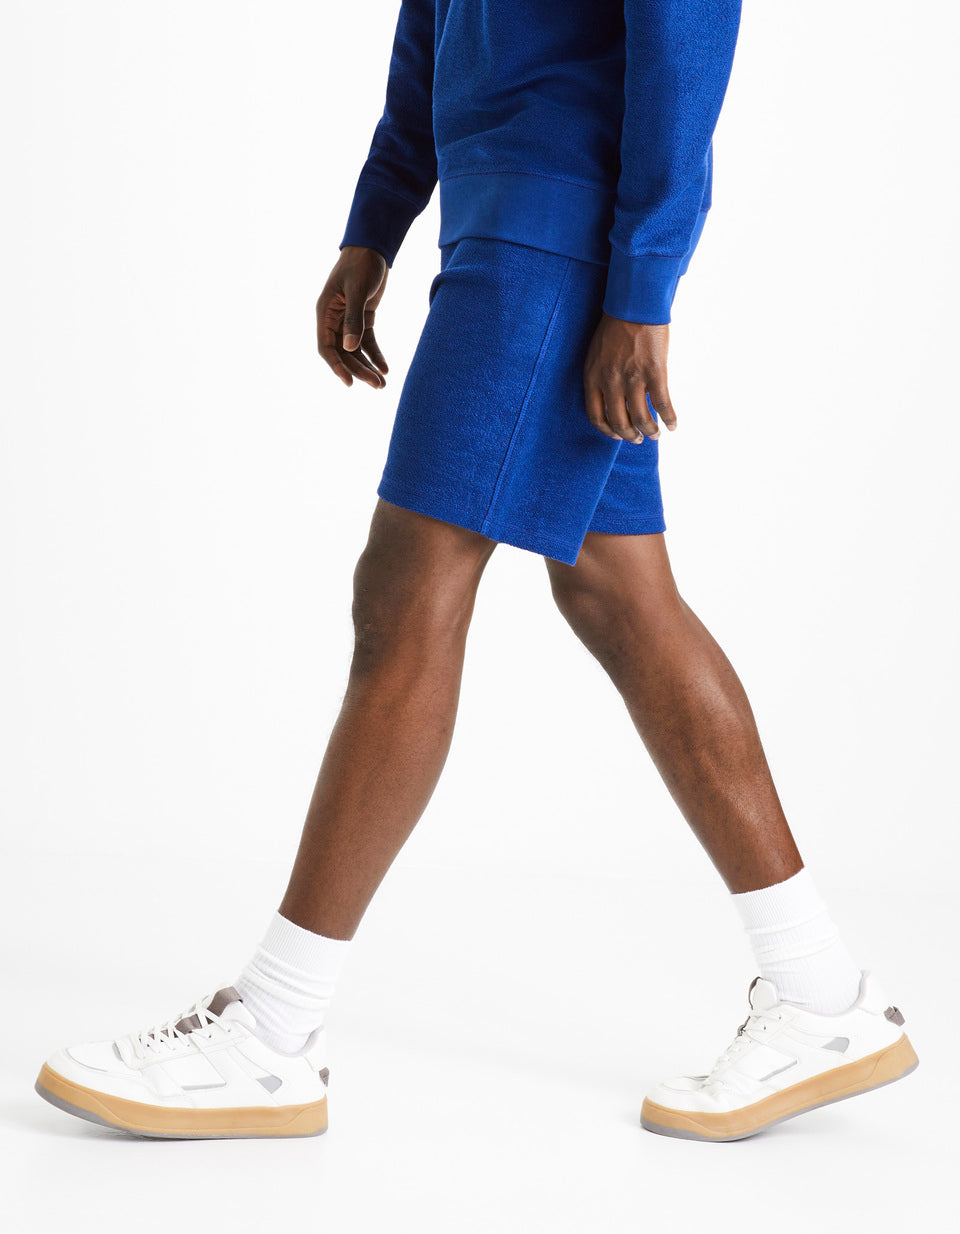 100% Cotton Shorts - Denim Blue - 03